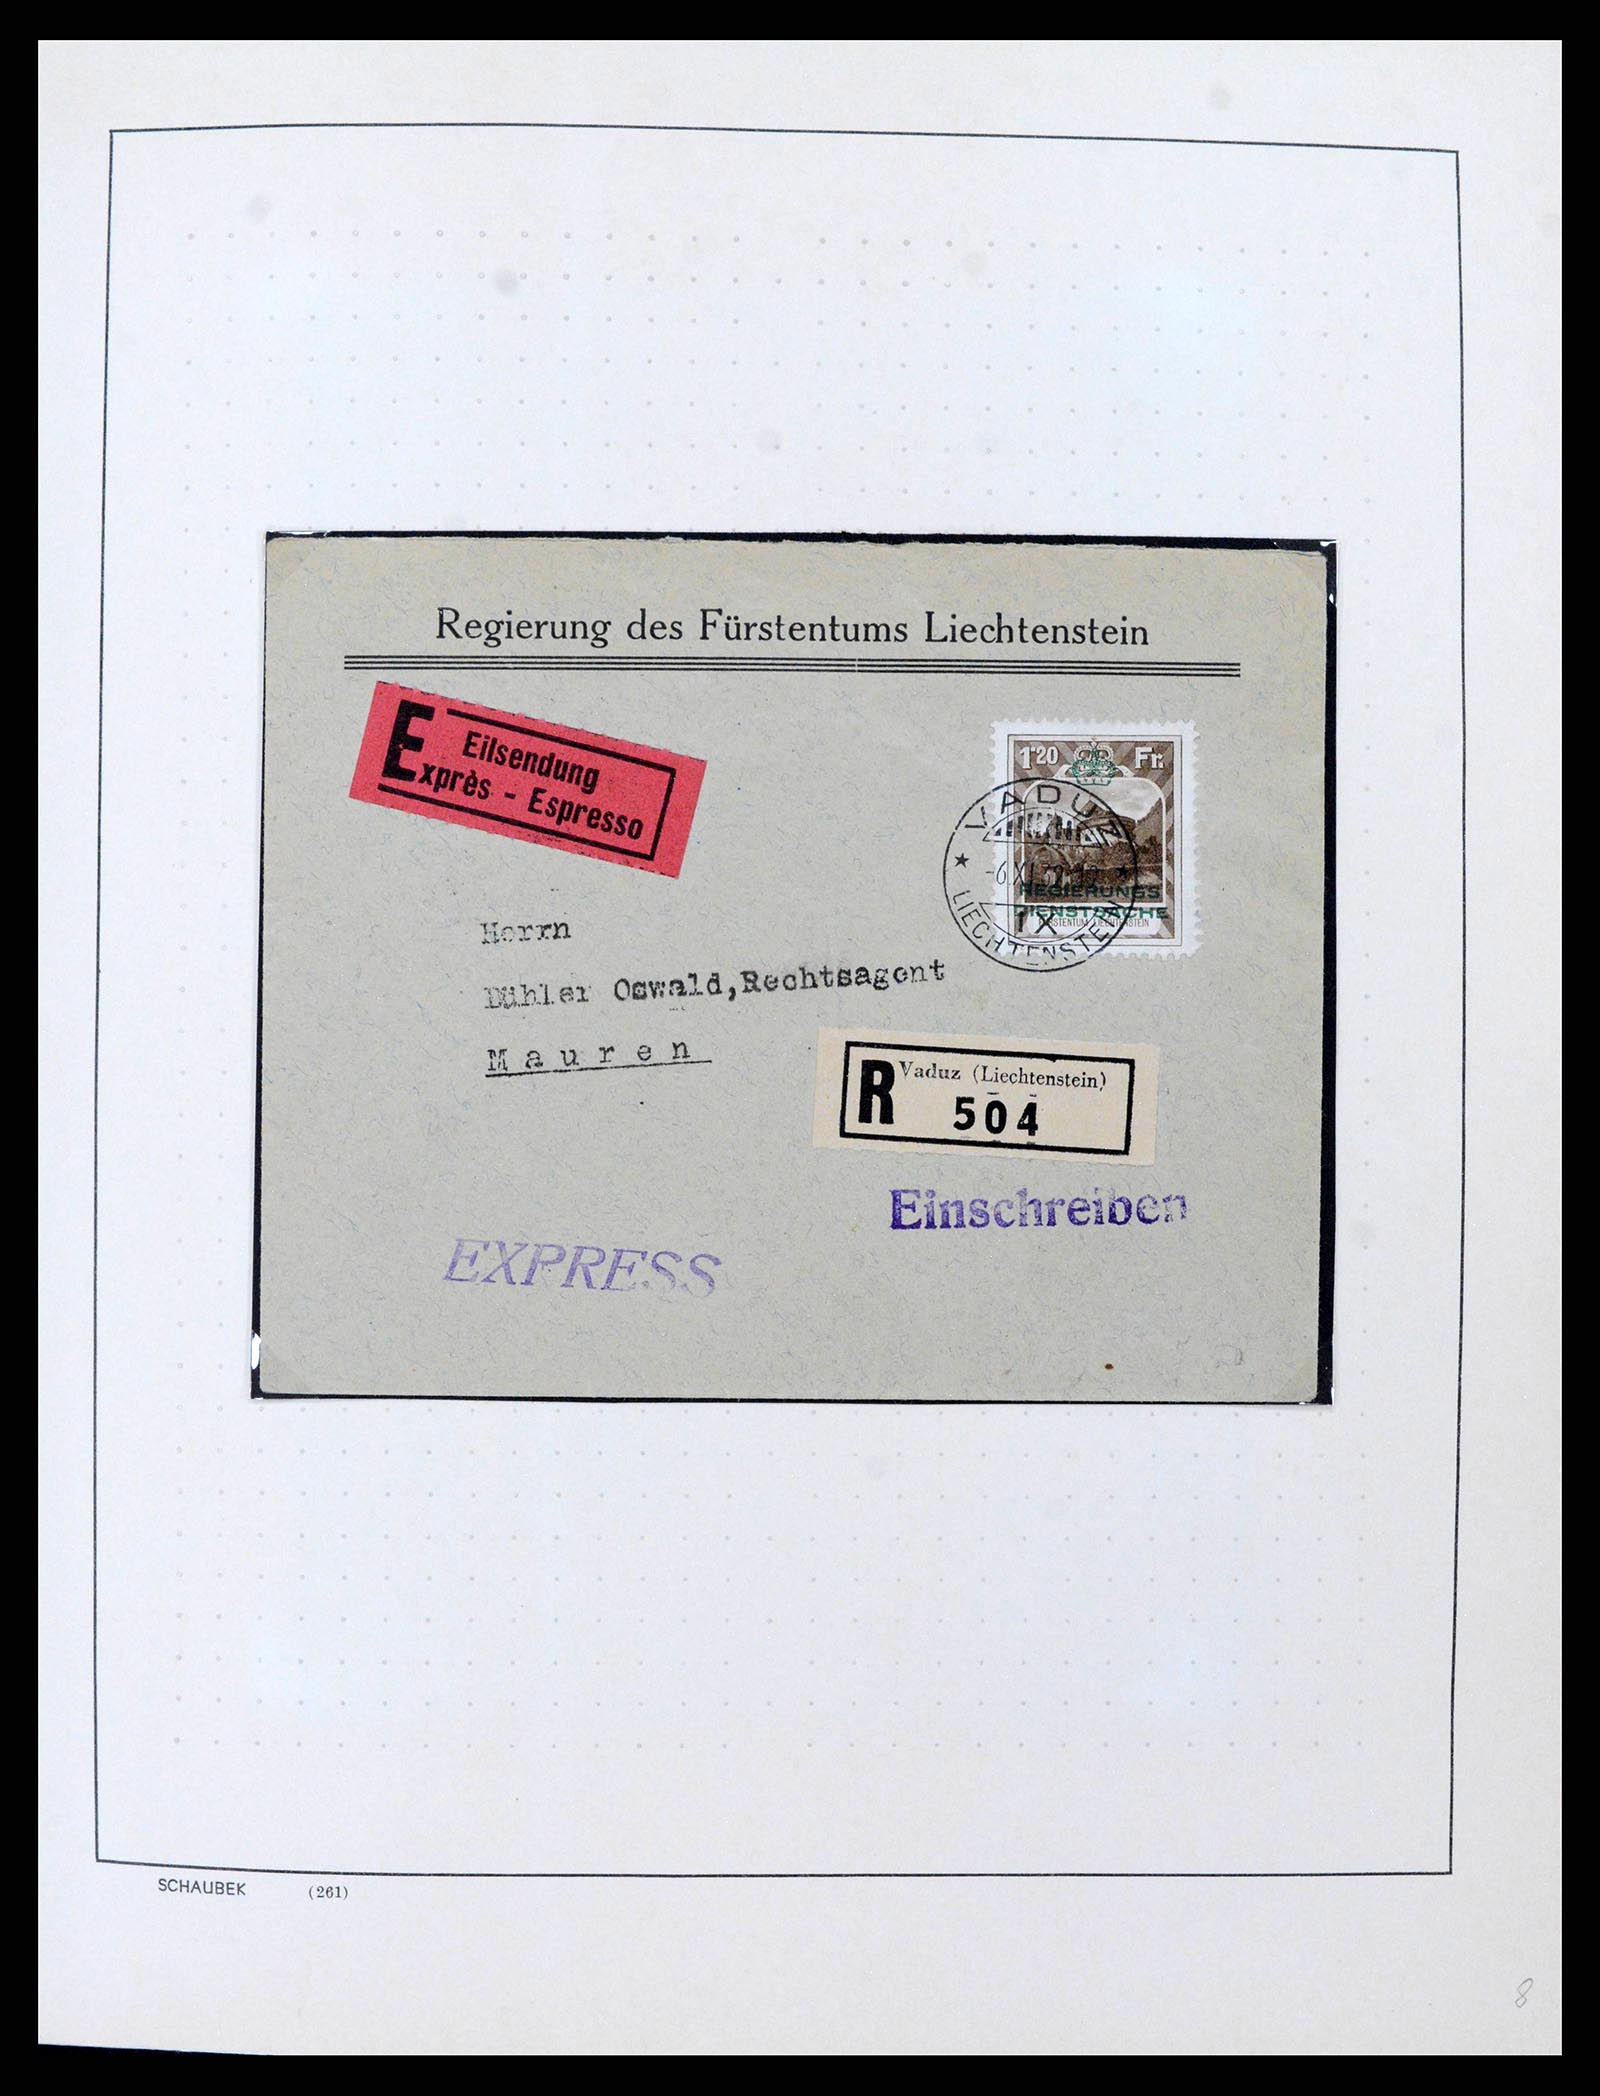 38204 0008 - Stamp collection 38204 Liechtenstein service covers 1932-1989.